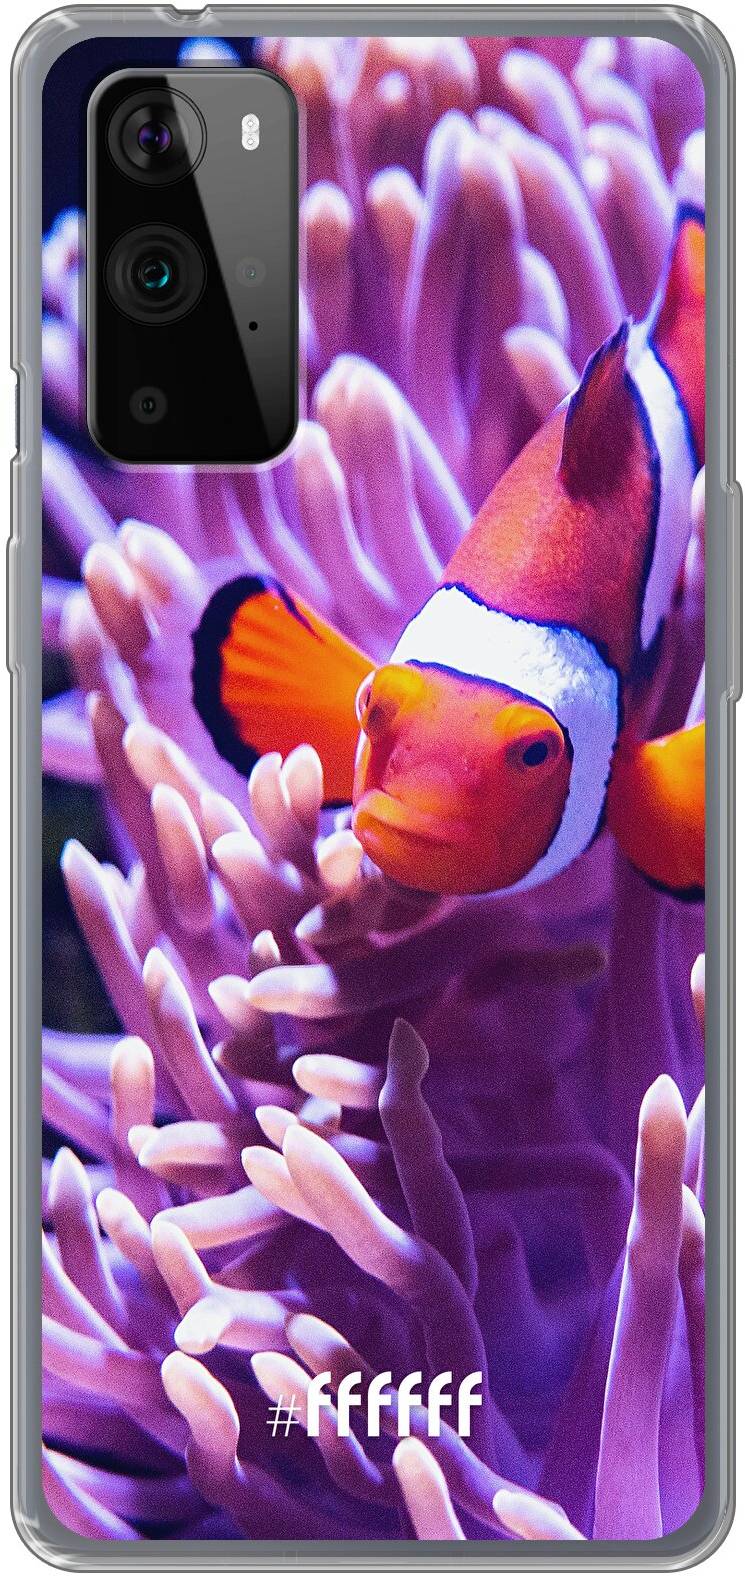 Nemo 9 Pro